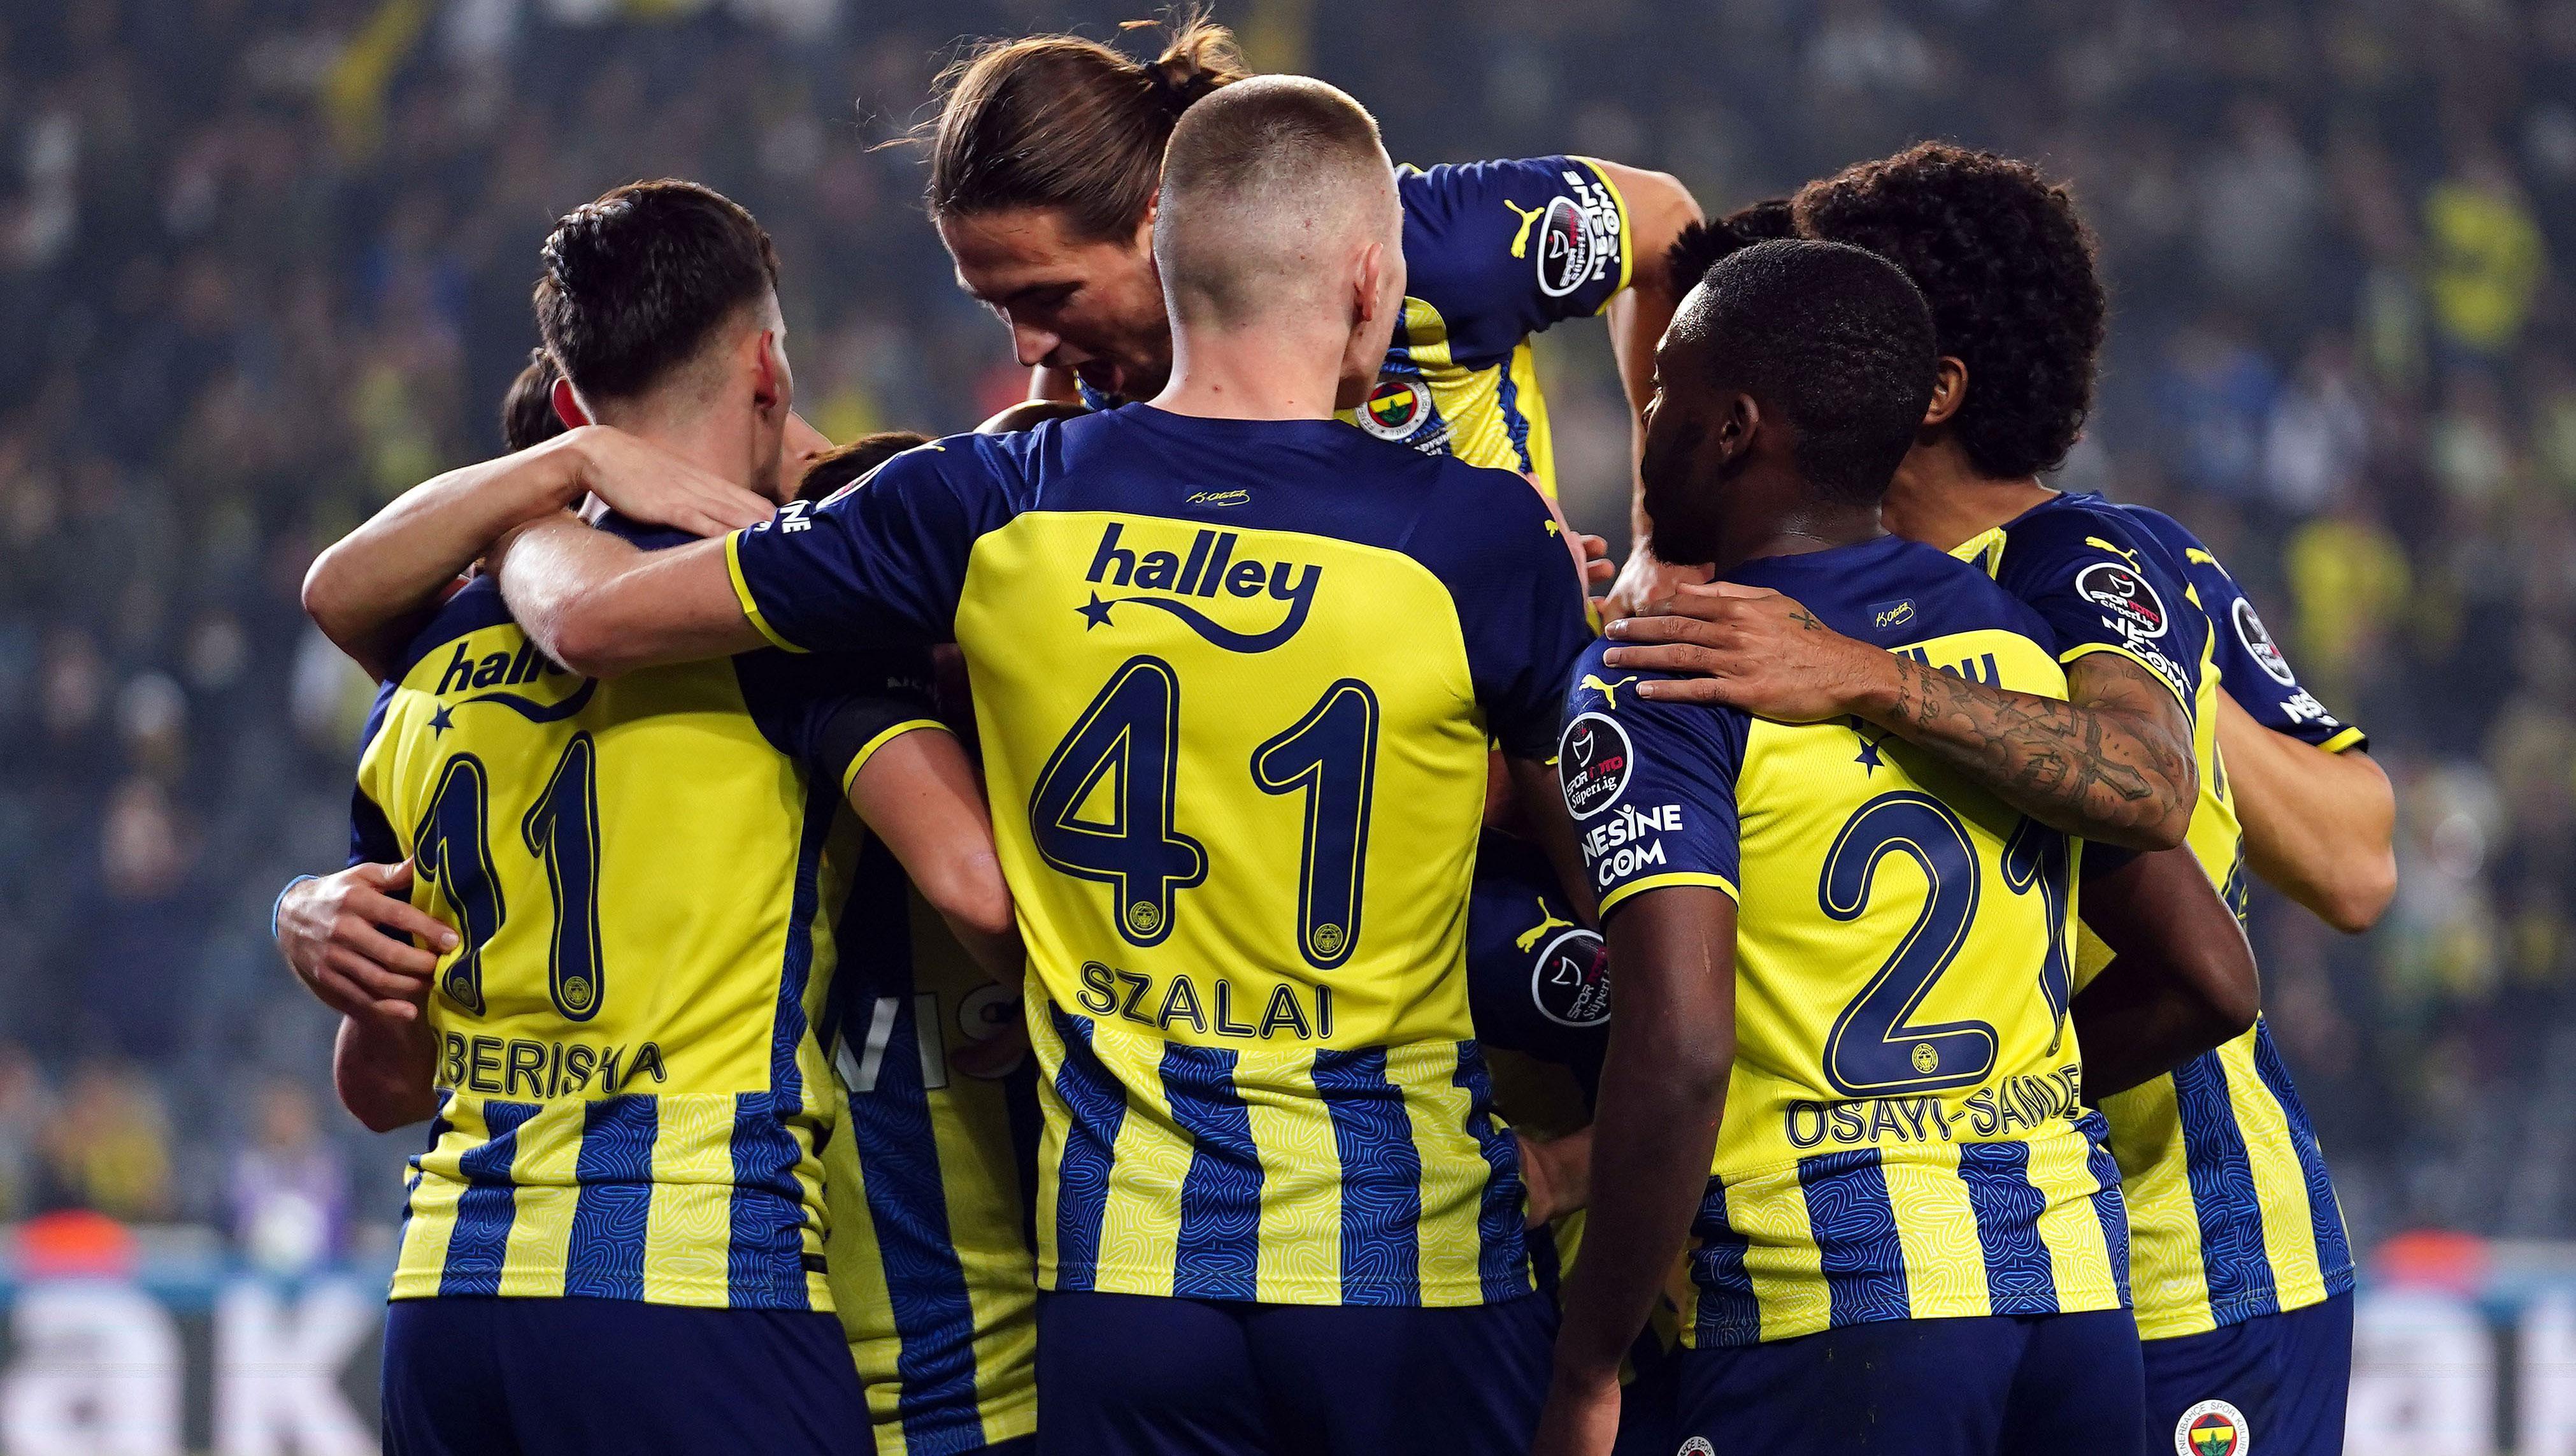 Fenerbahçe-Çaykur Rizespor maç sonucu: 4-0 (Maçın Özeti ve Golleri)